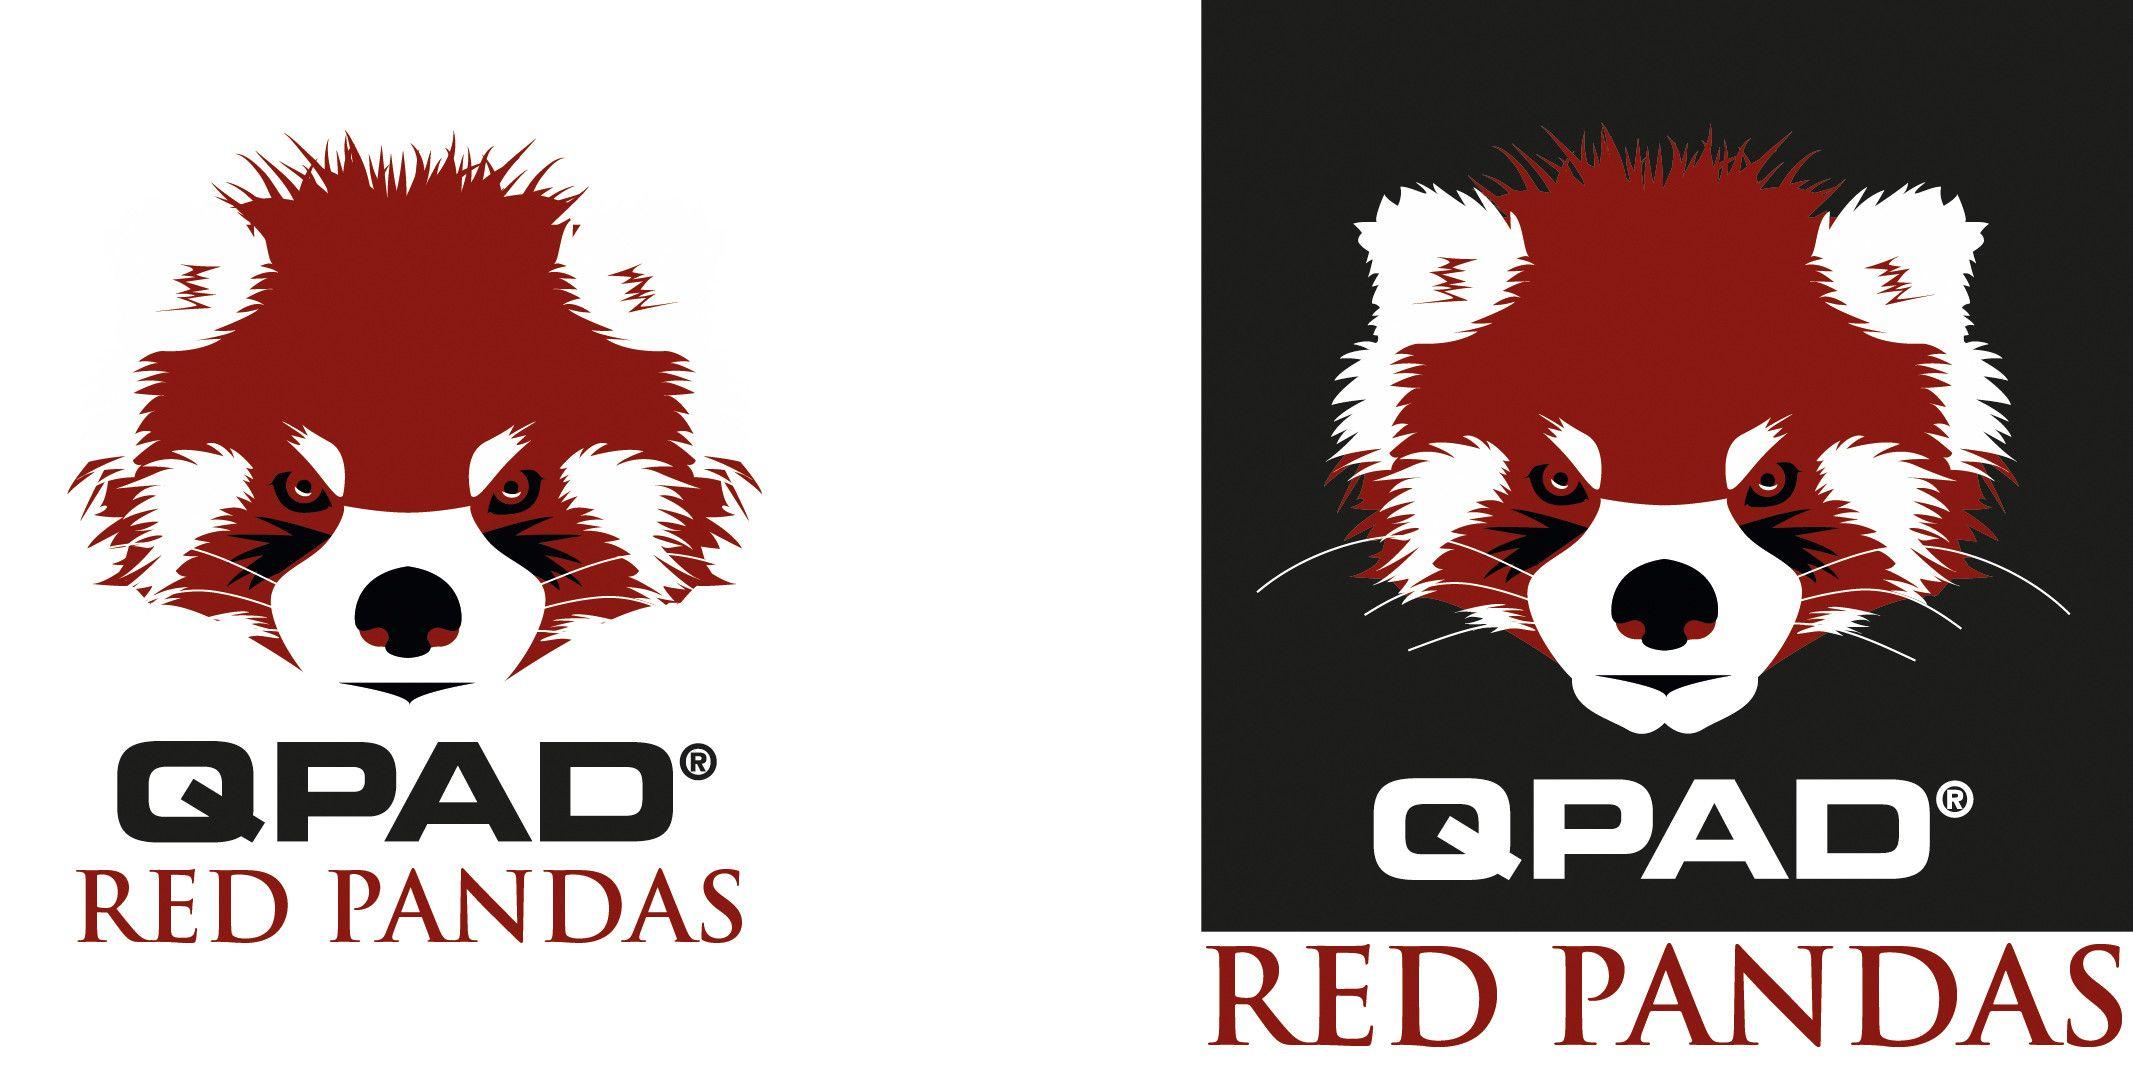 Red Panda Logo - Qpad Red pandas logo : DotA2